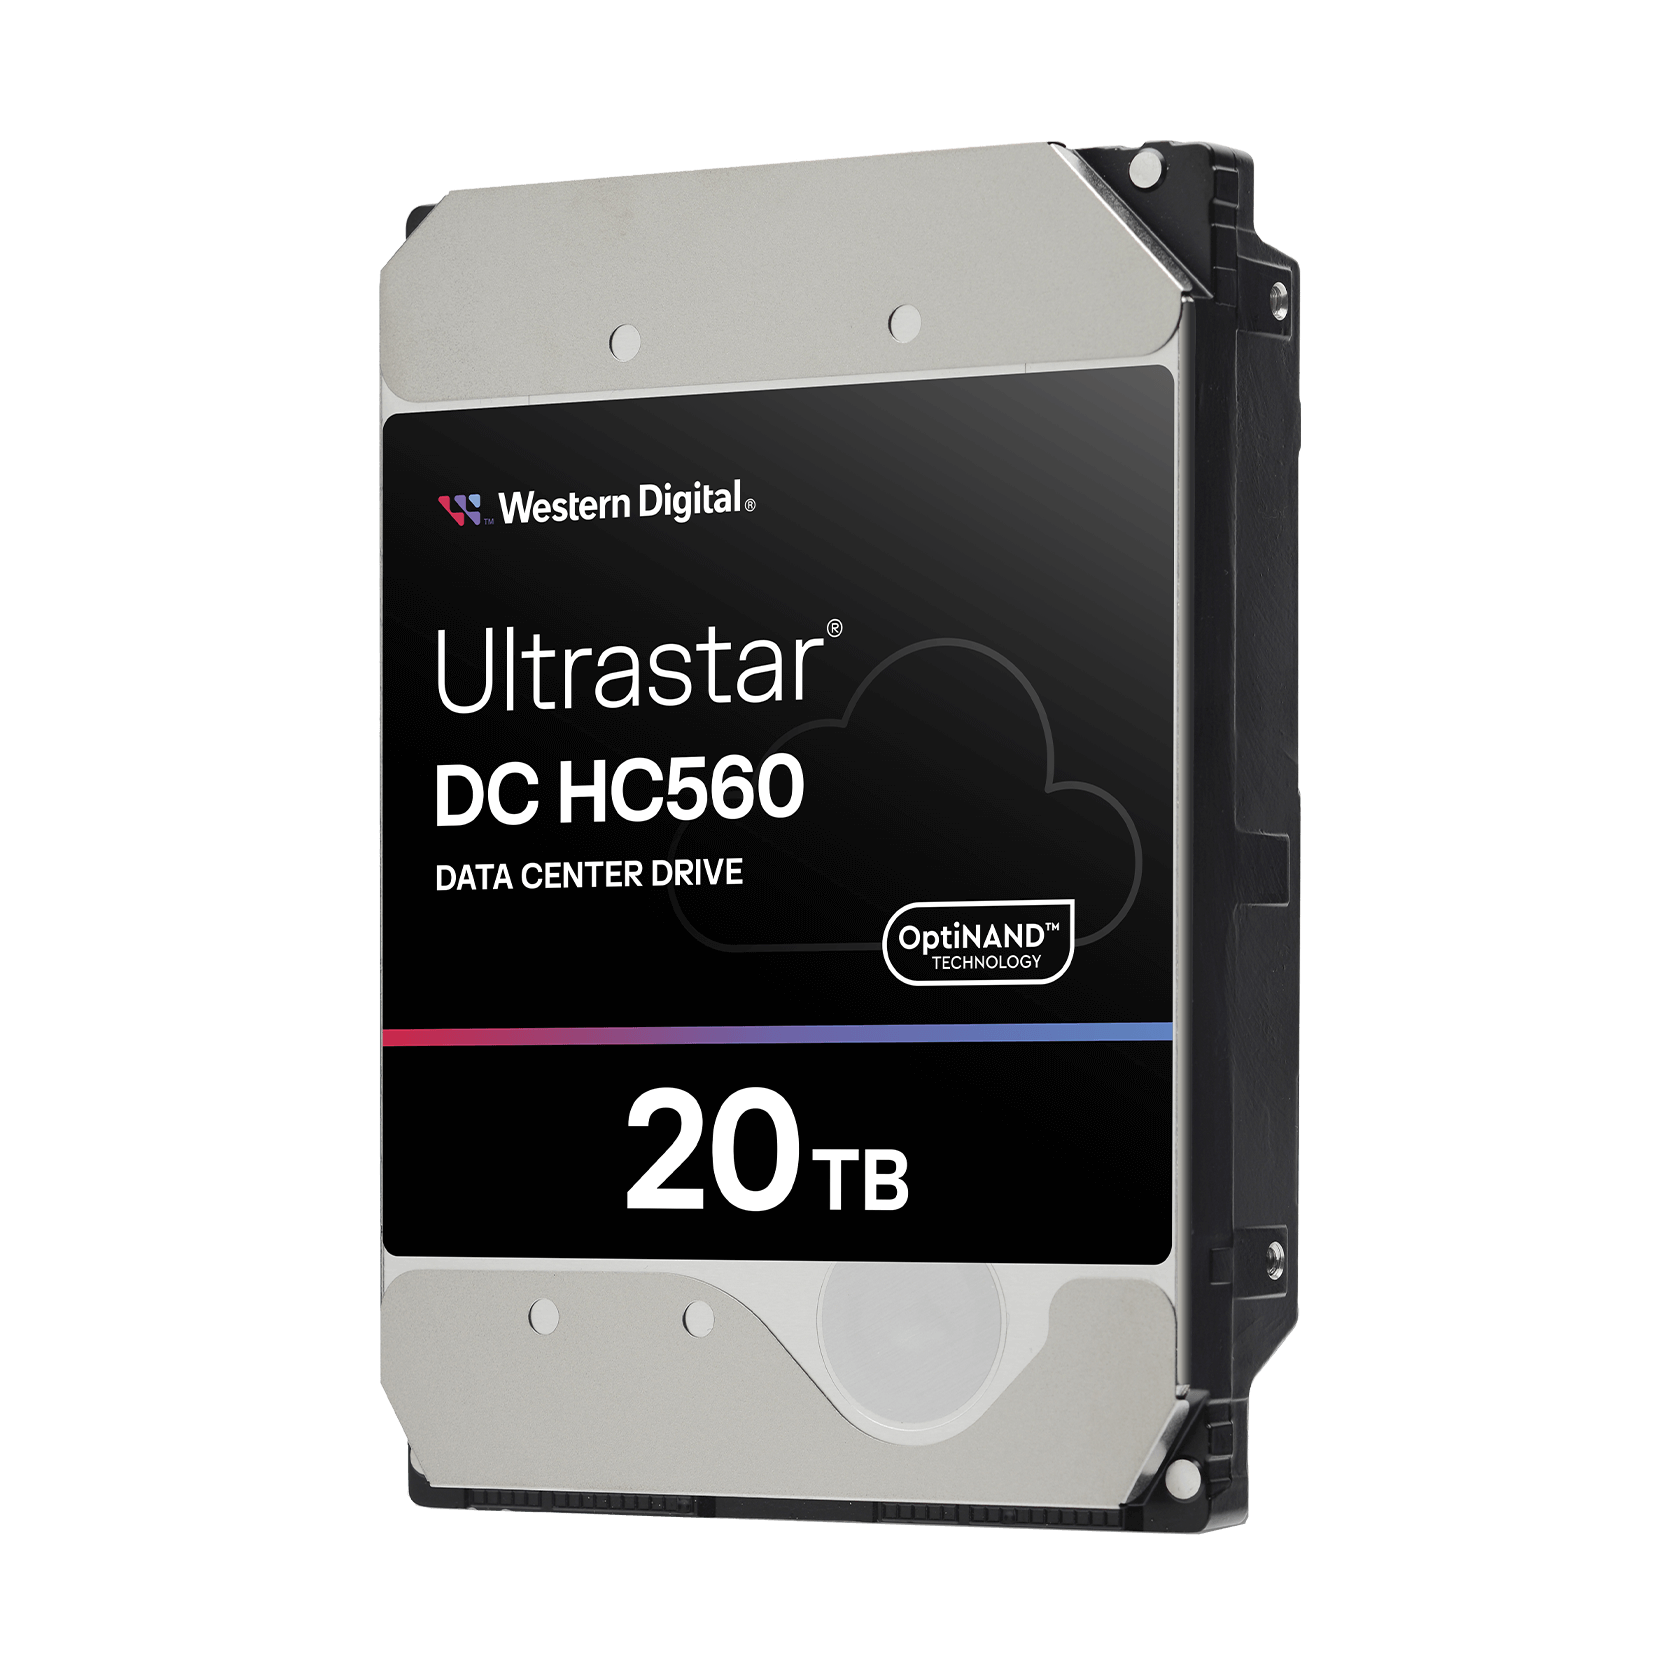 Western Digital 20TB Ultrastar® DC HC560 - - 0F38754